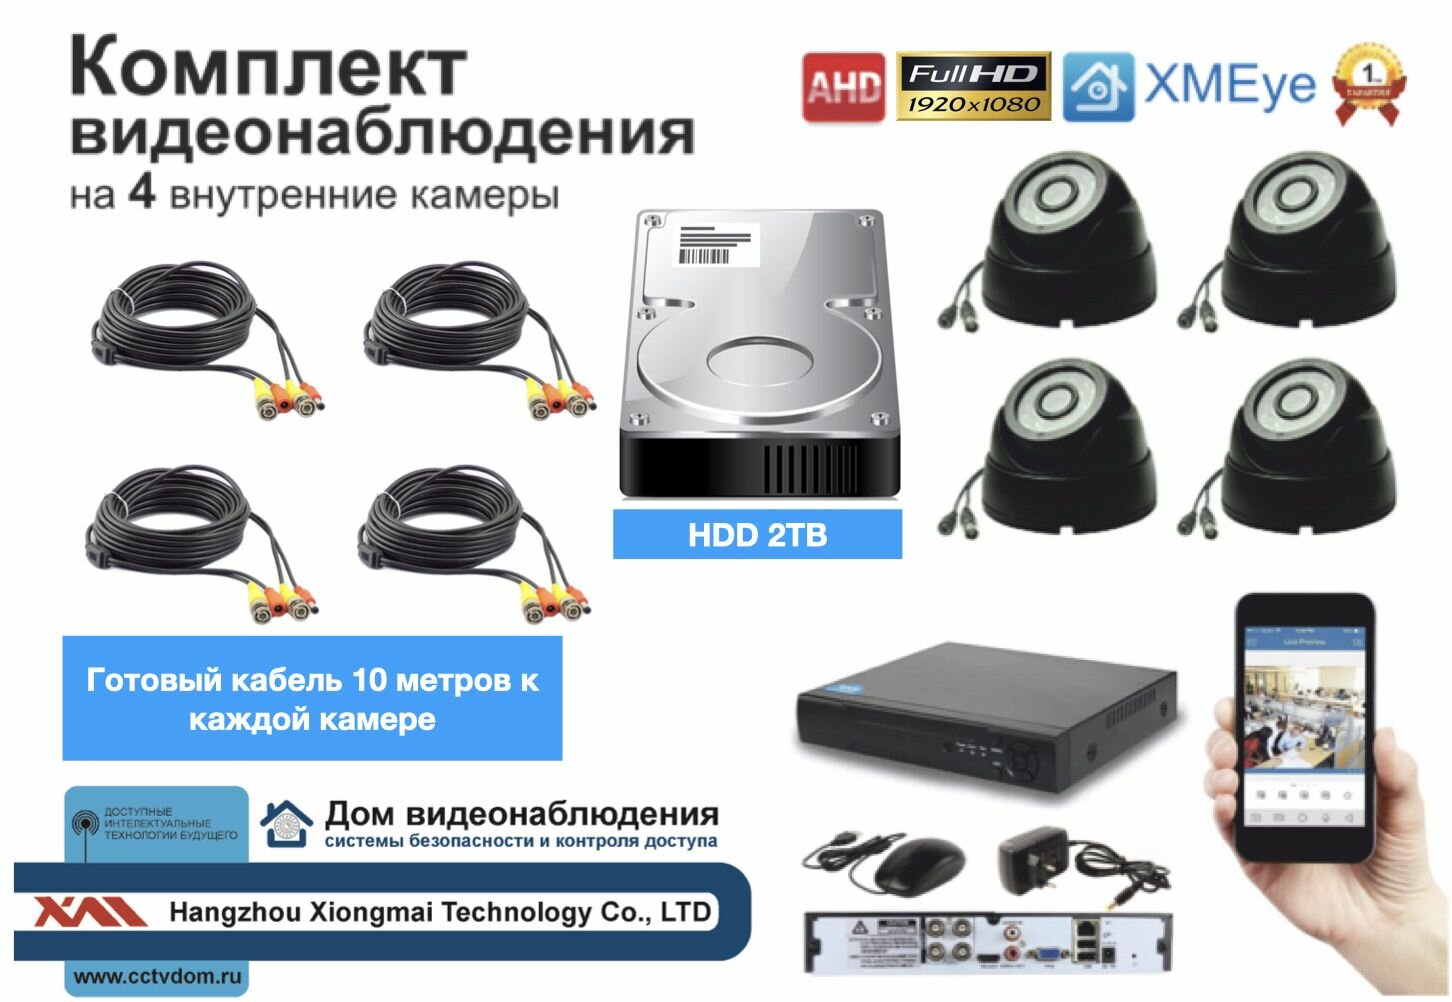 Полный готовый комплект видеонаблюдения на 4 камеры Full HD (KIT4AHD300B1080P_HDD2TB)